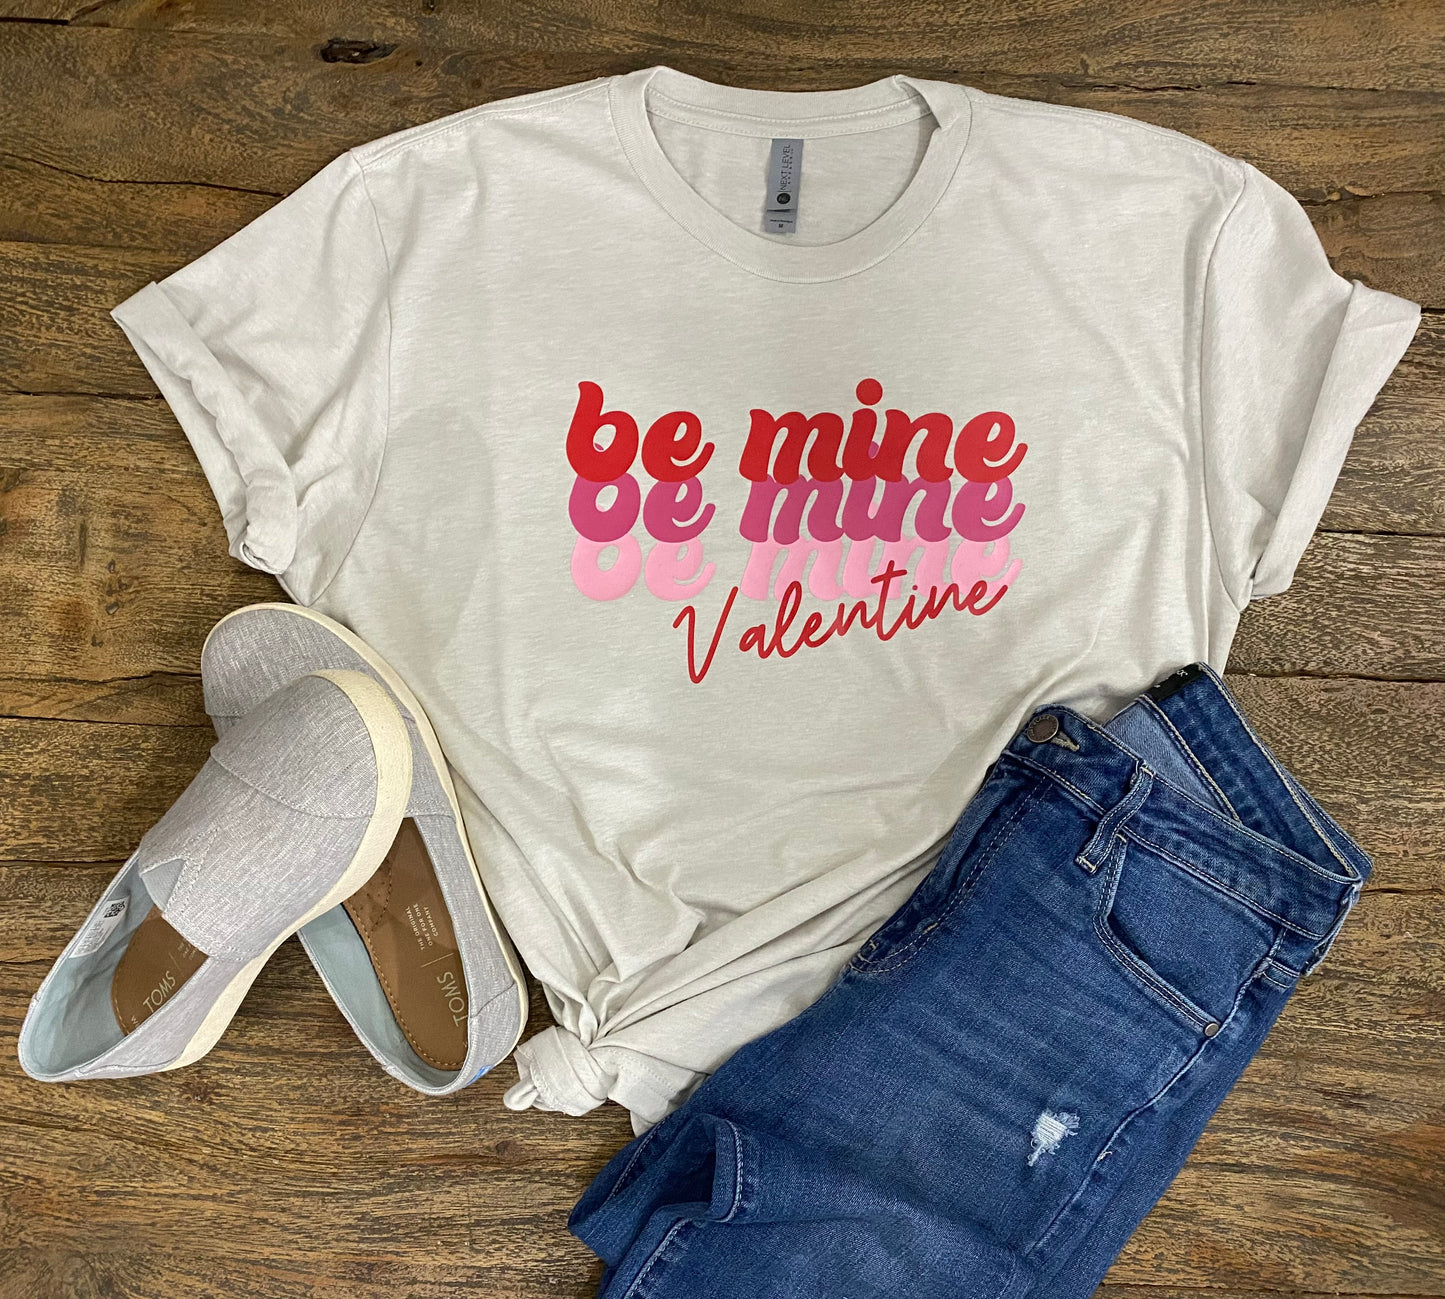 Be mine Valentine tee